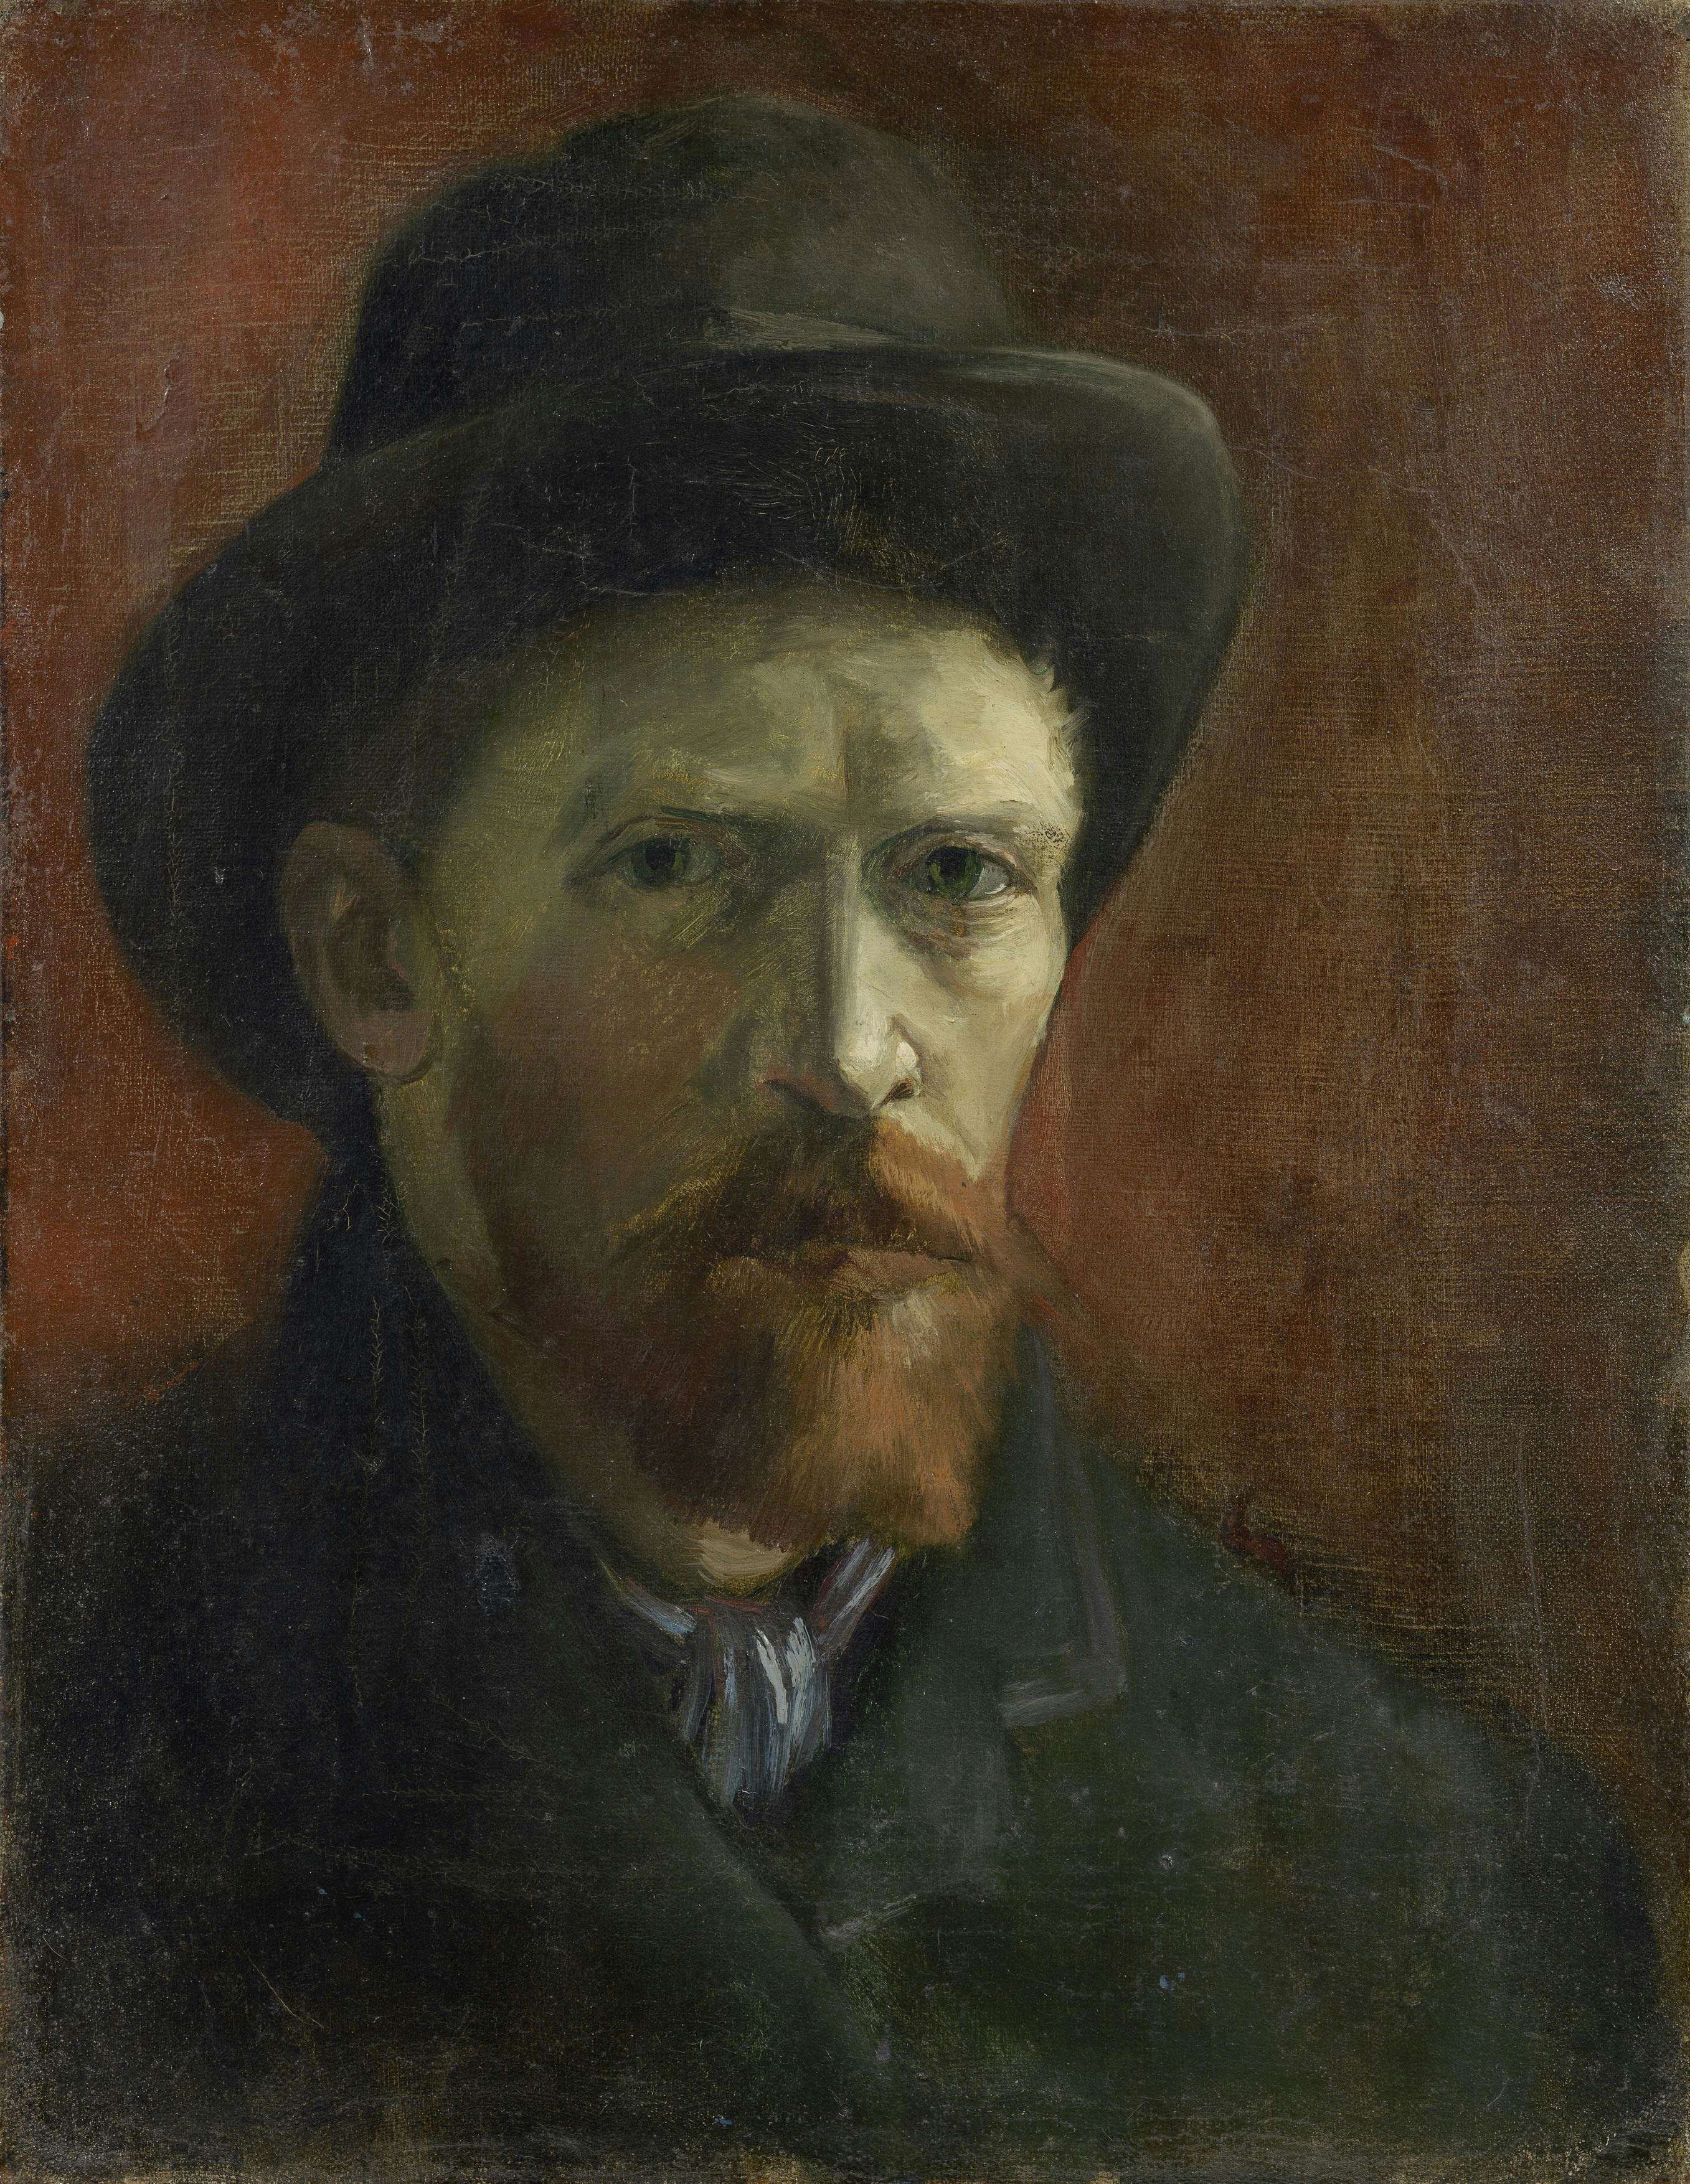 ゴッホの自画像に特化した世界初の展覧会。「Van Gogh Self-Portraits 